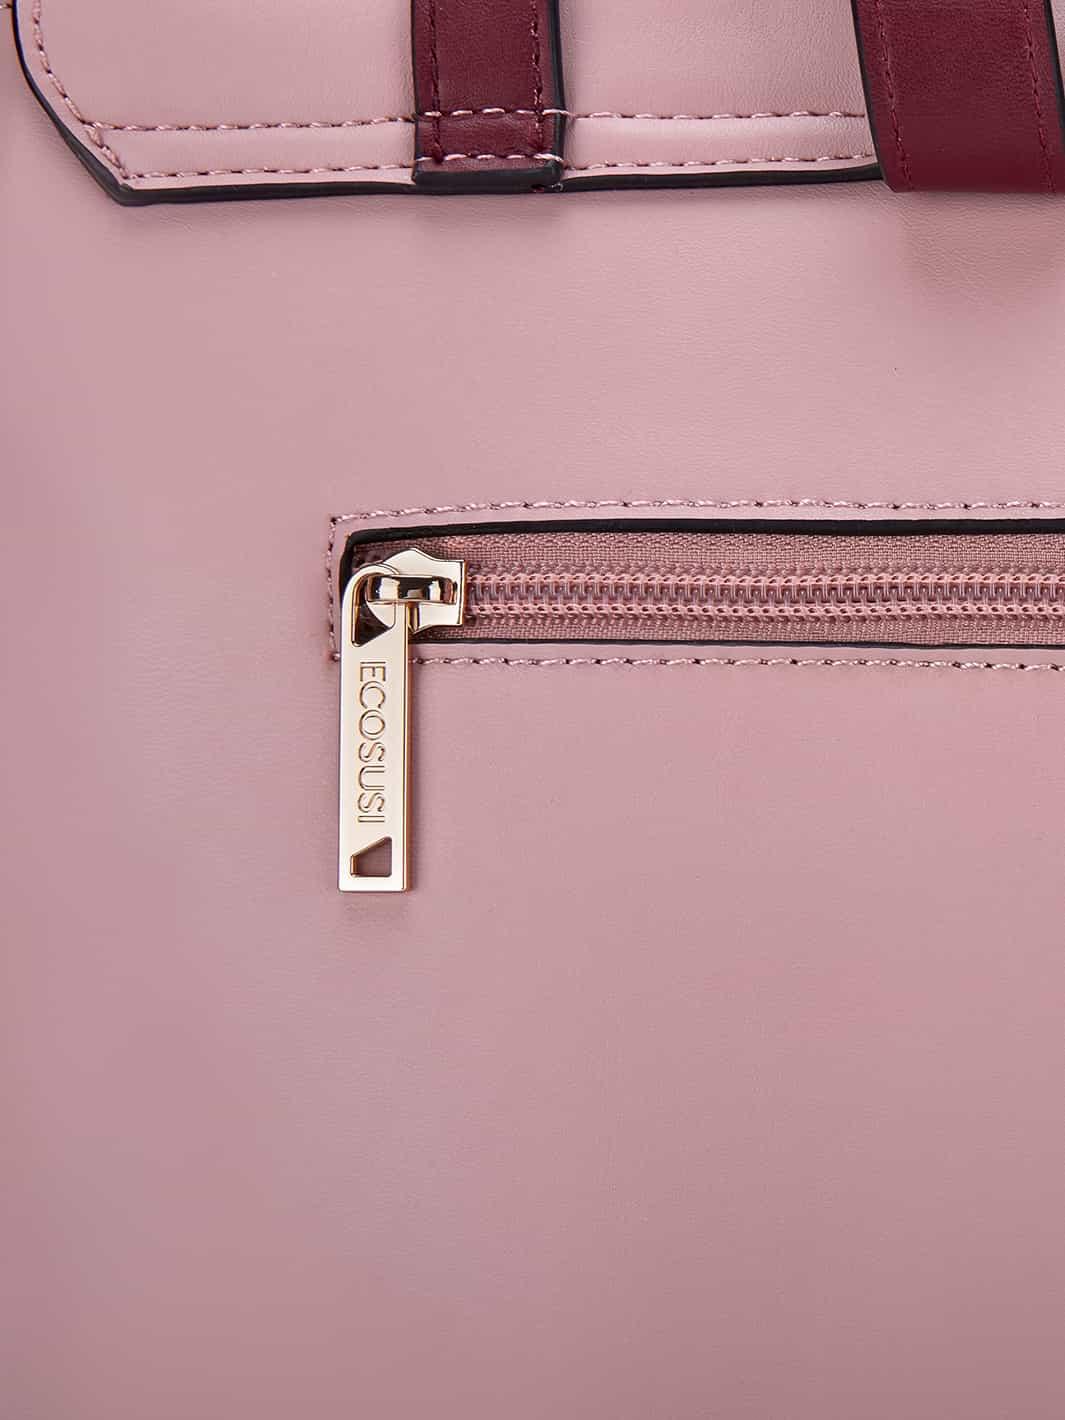 Belladonna Vintage Backpack- Pink